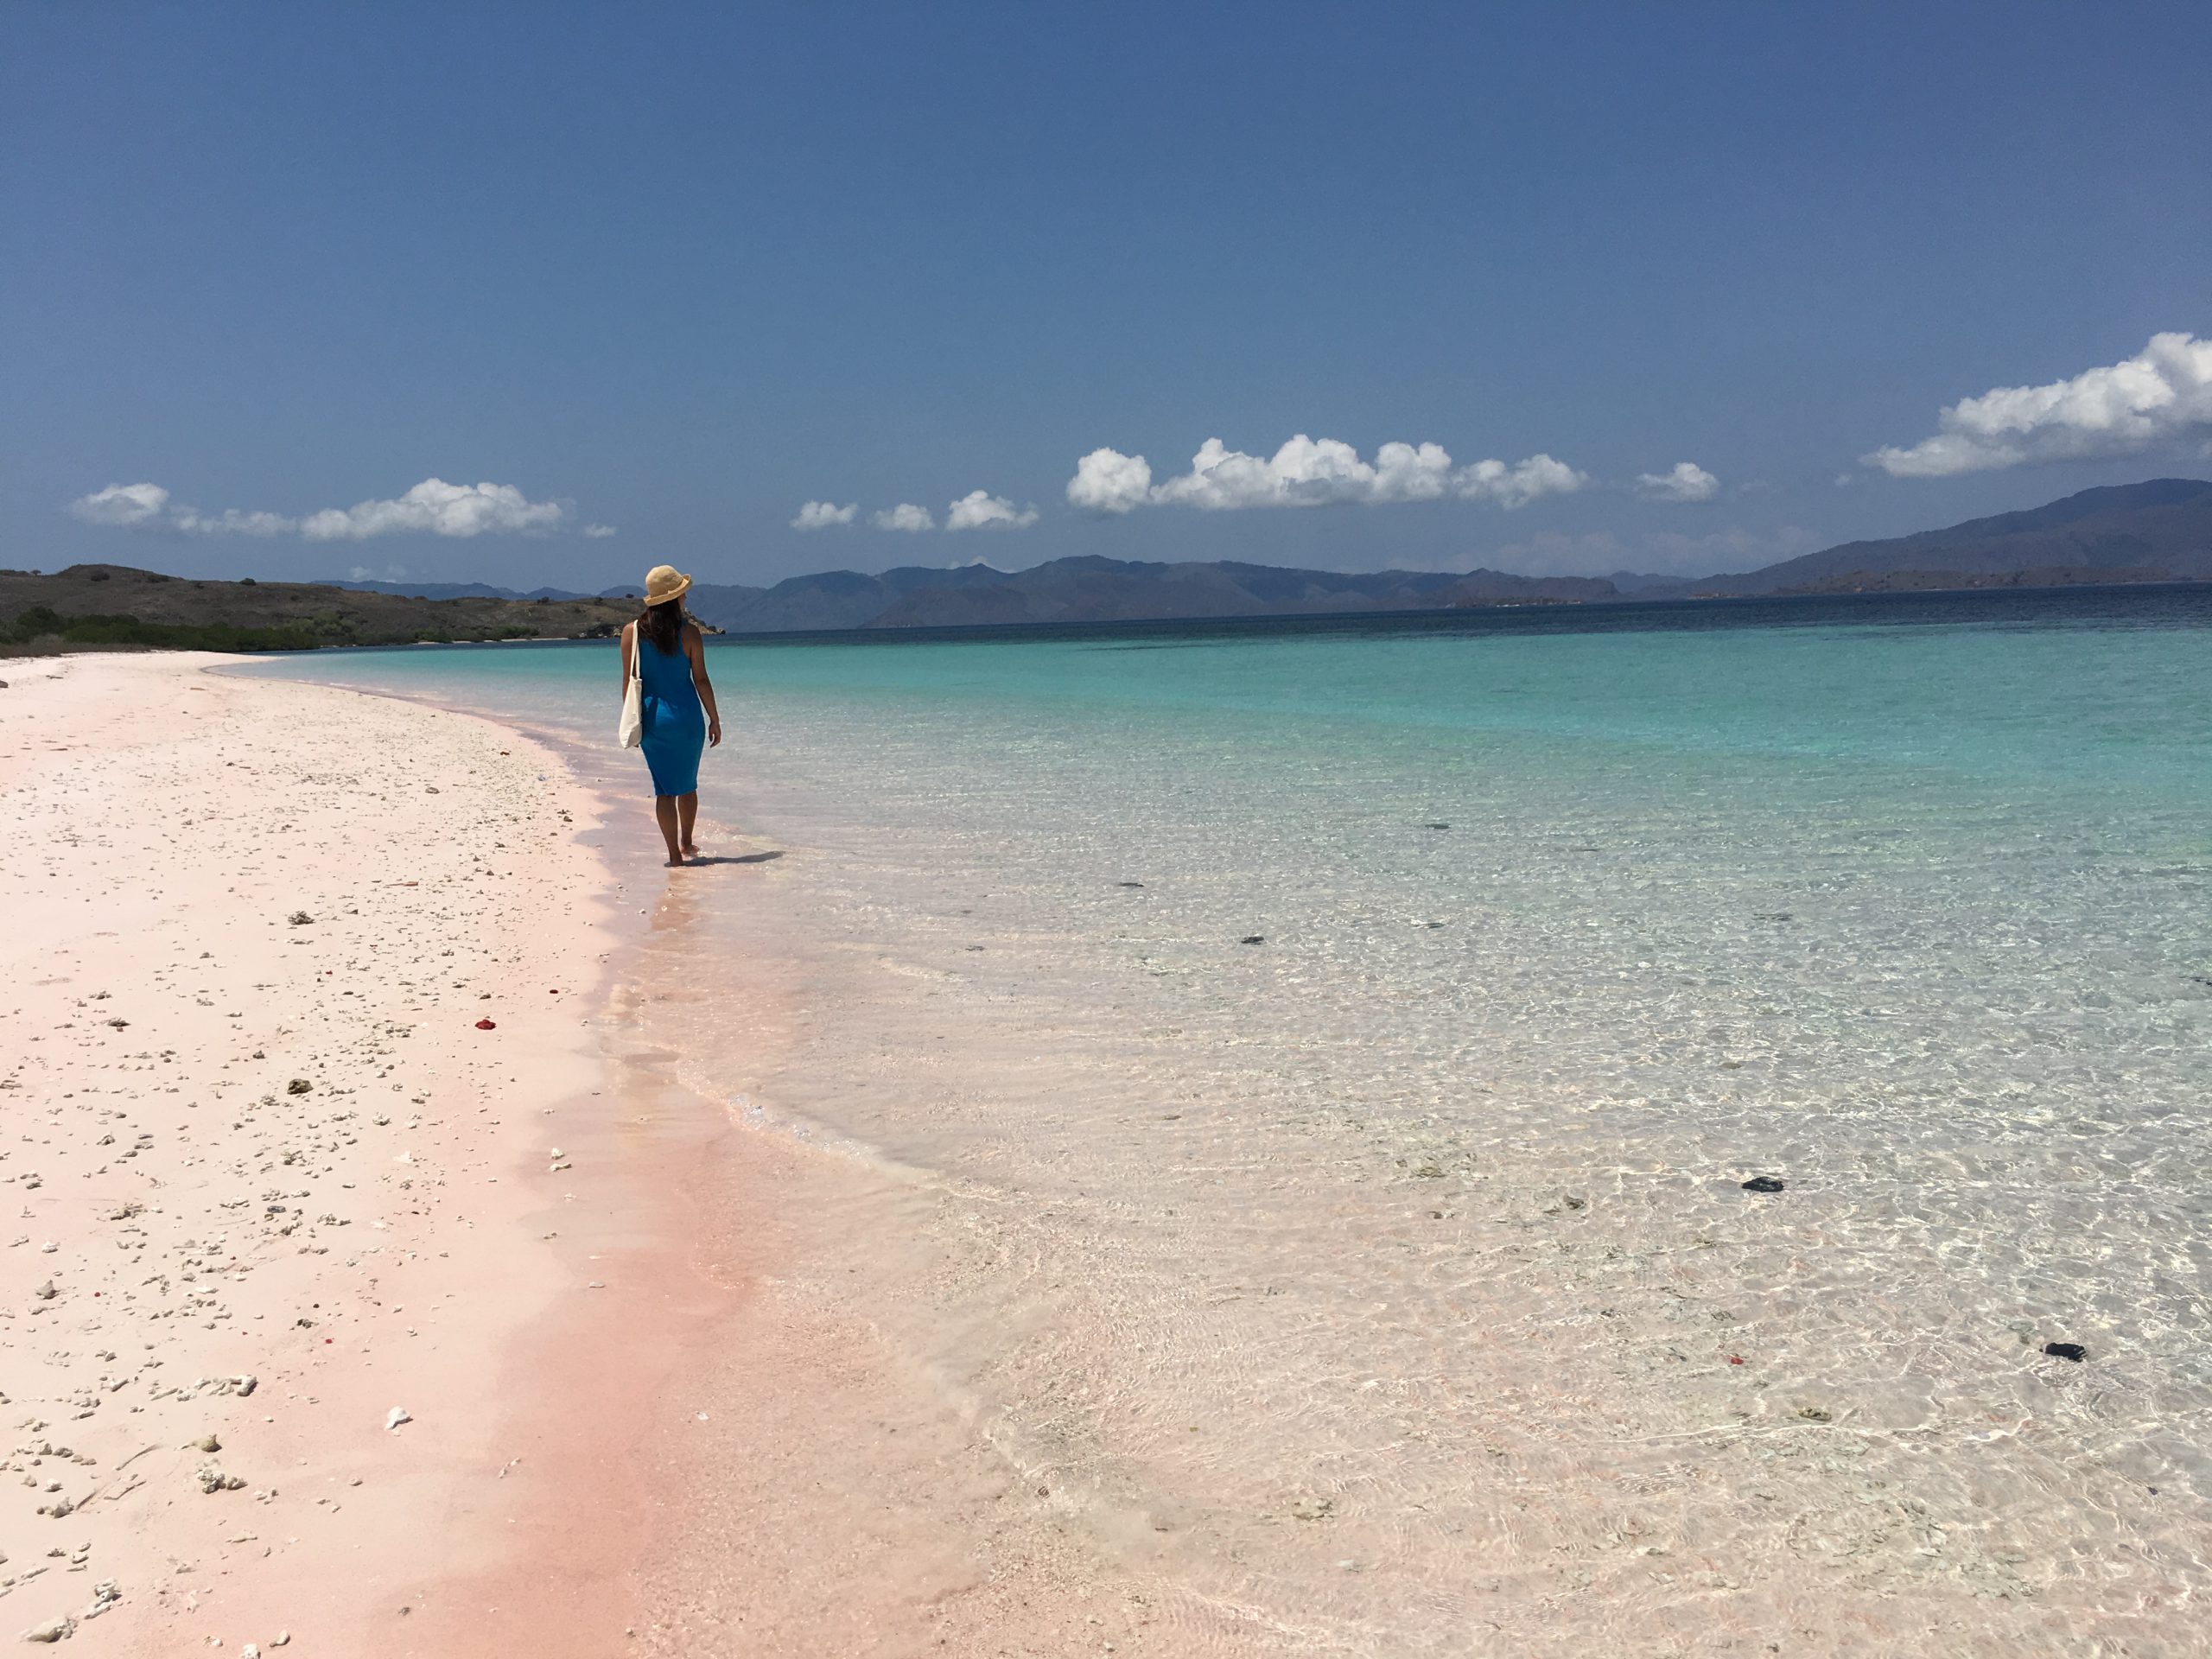 エメラルド色の透明な海と、ピンク色の砂浜のコンビネーションが美しい。